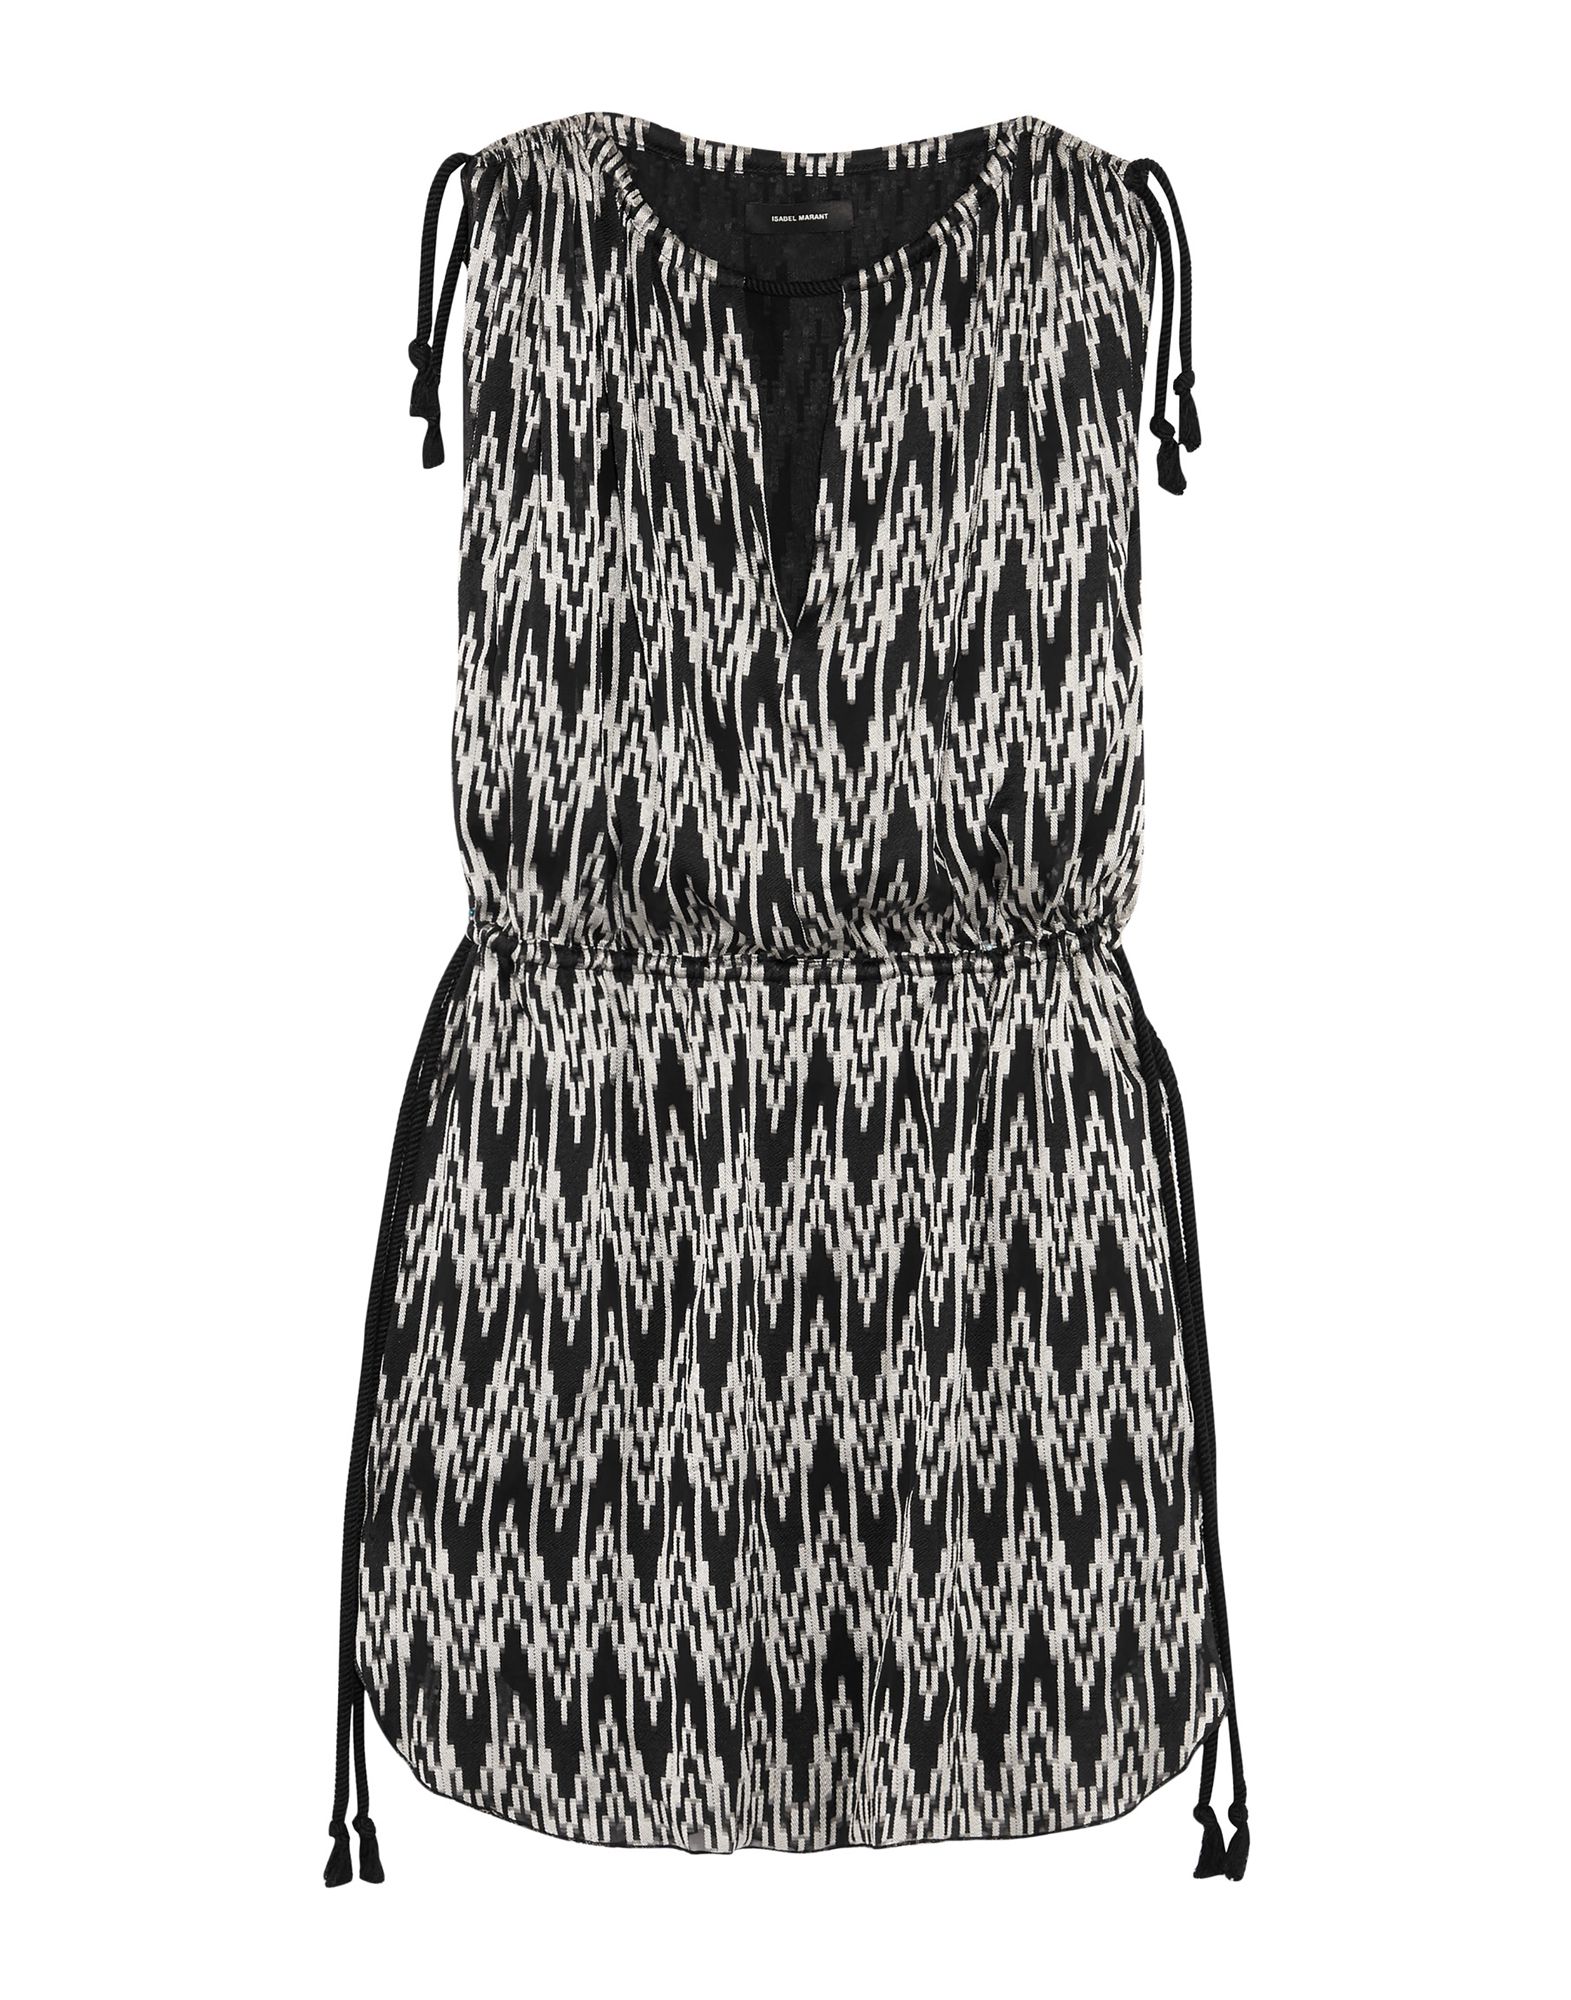 Isabel Marant Short Dress In Black | ModeSens